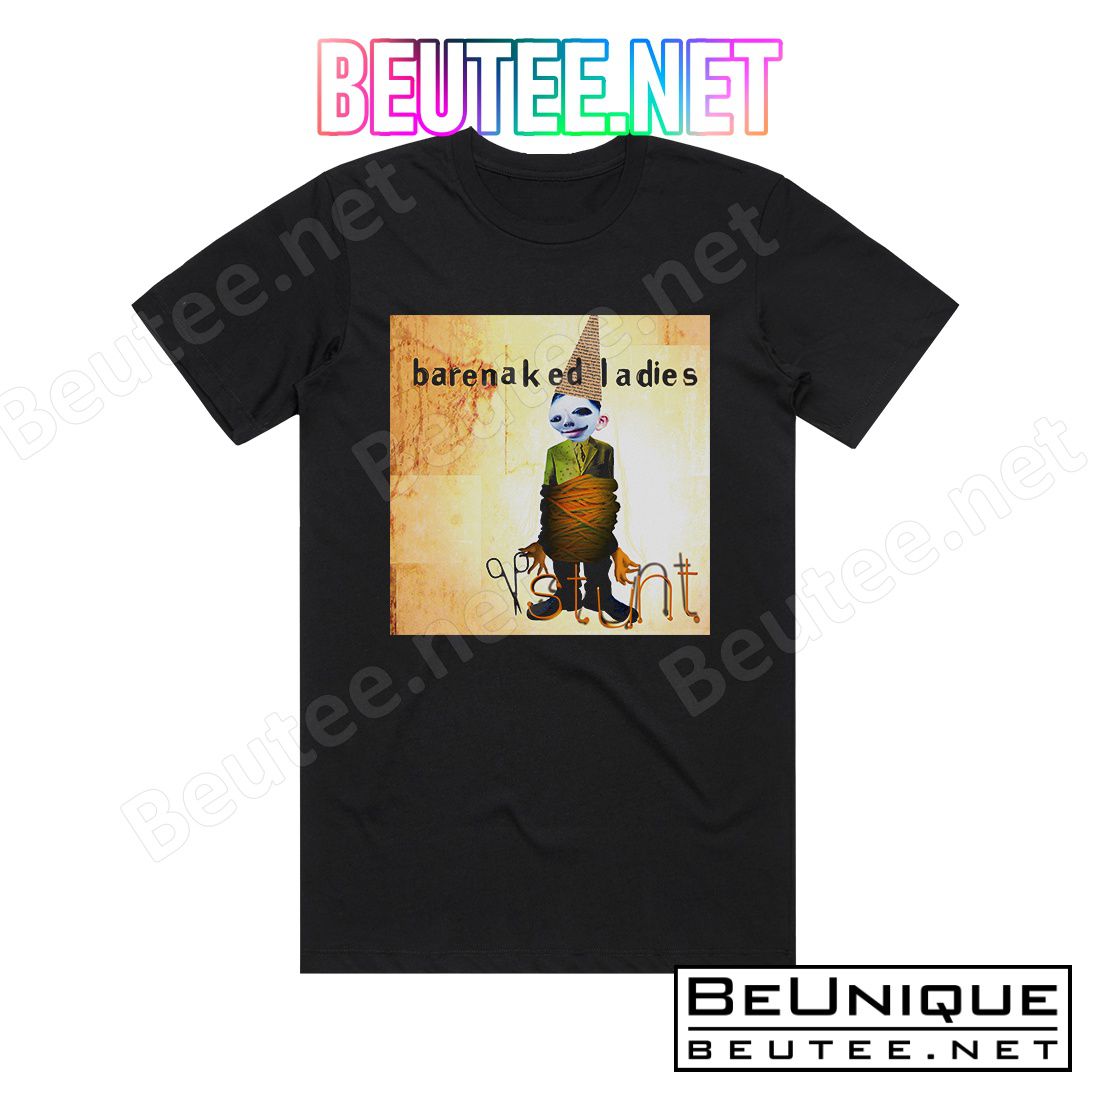 Barenaked Ladies Stunt Album Cover T-Shirt